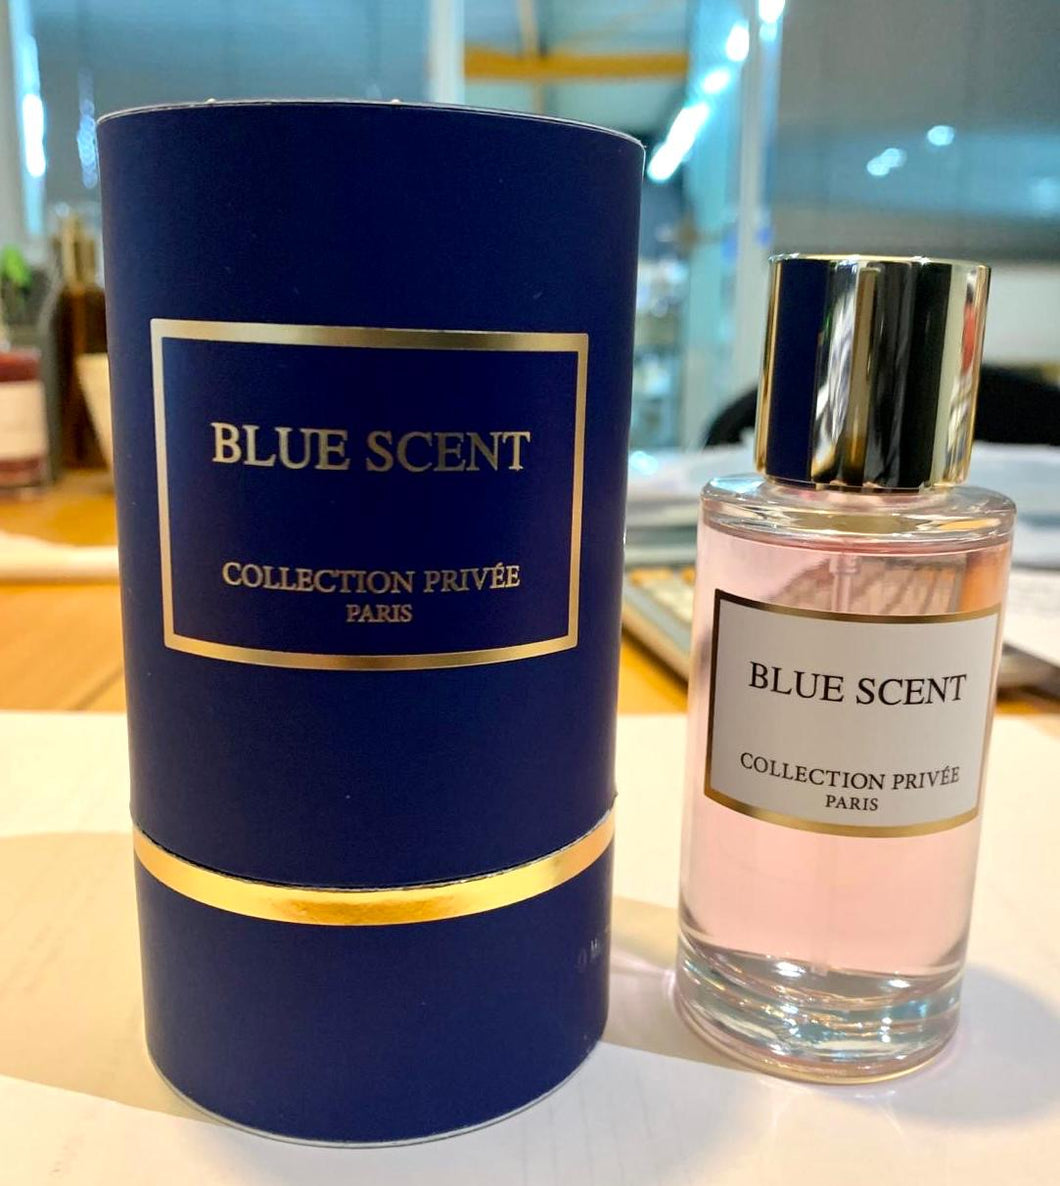 Collection privée - blue scent